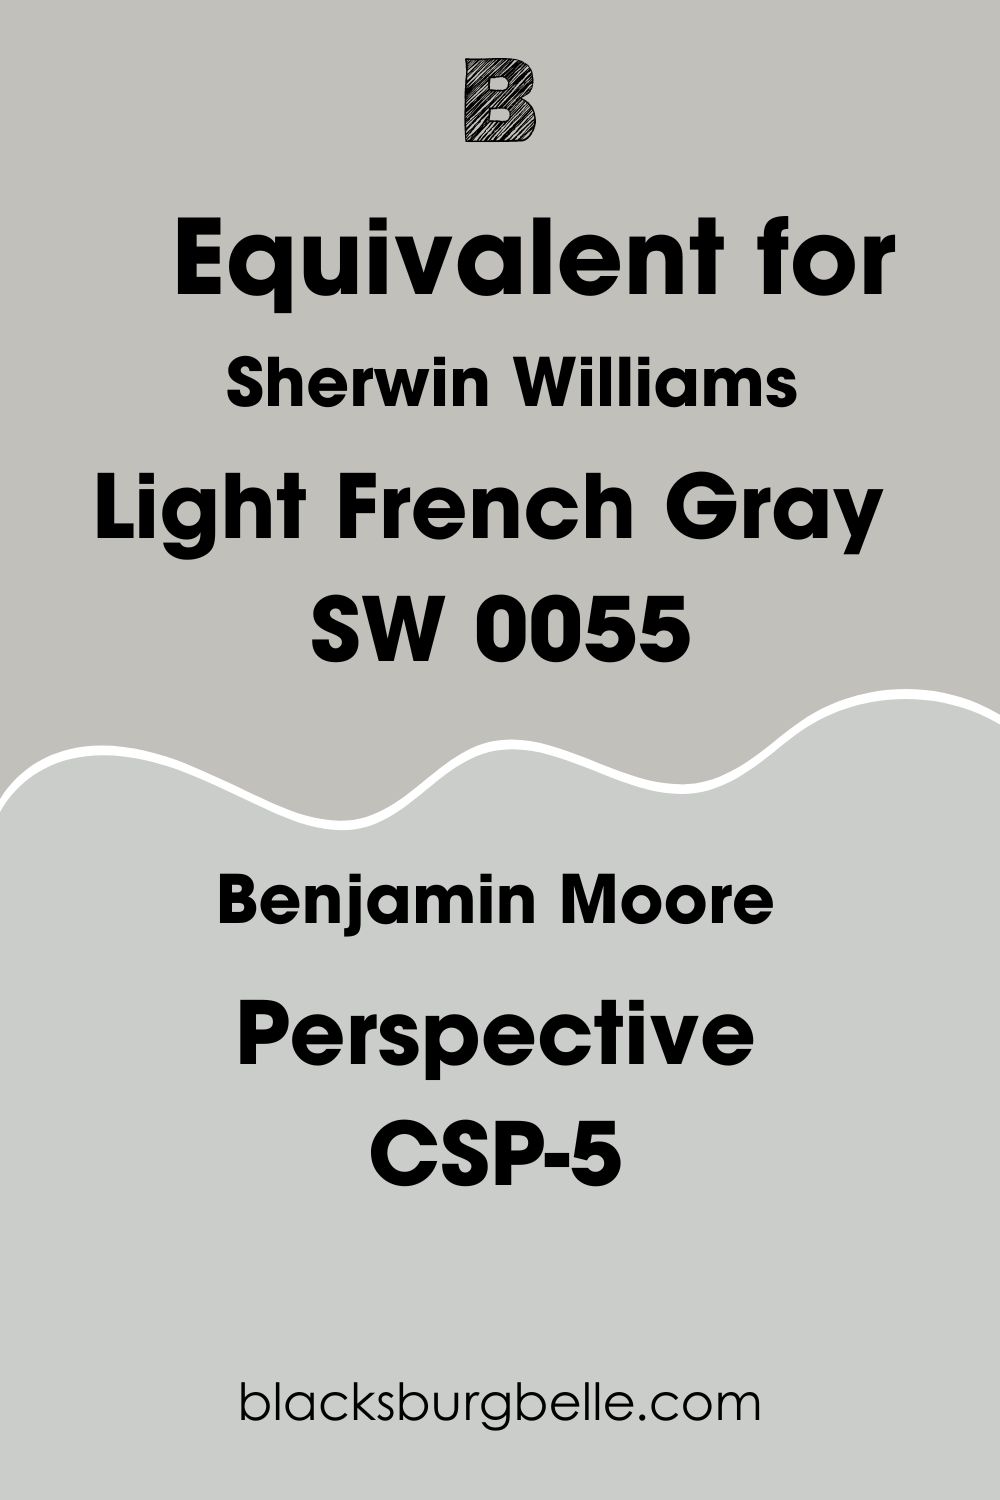 Benjamin Moore Perspective CSP-5